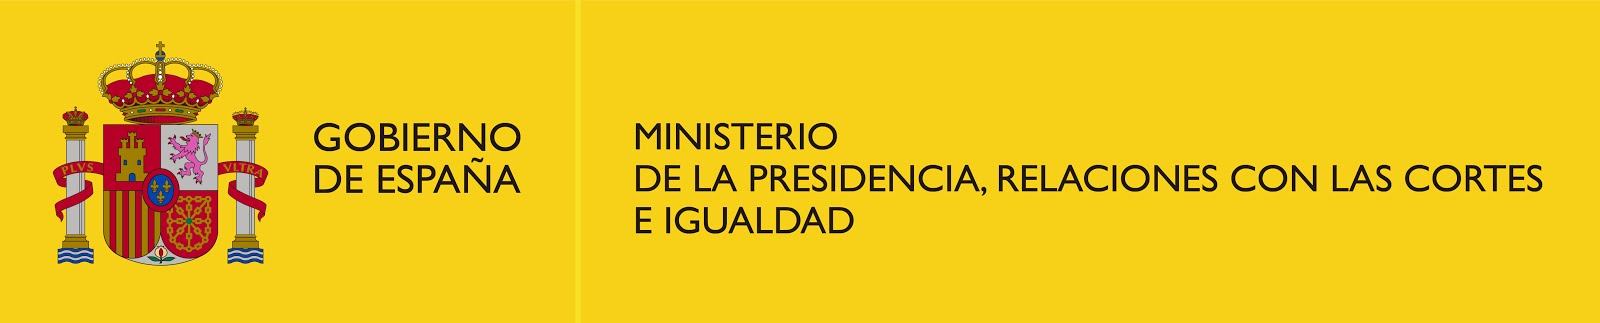 Ministerio de la Presidencia, Relaciones con las Cortes e Igualdad